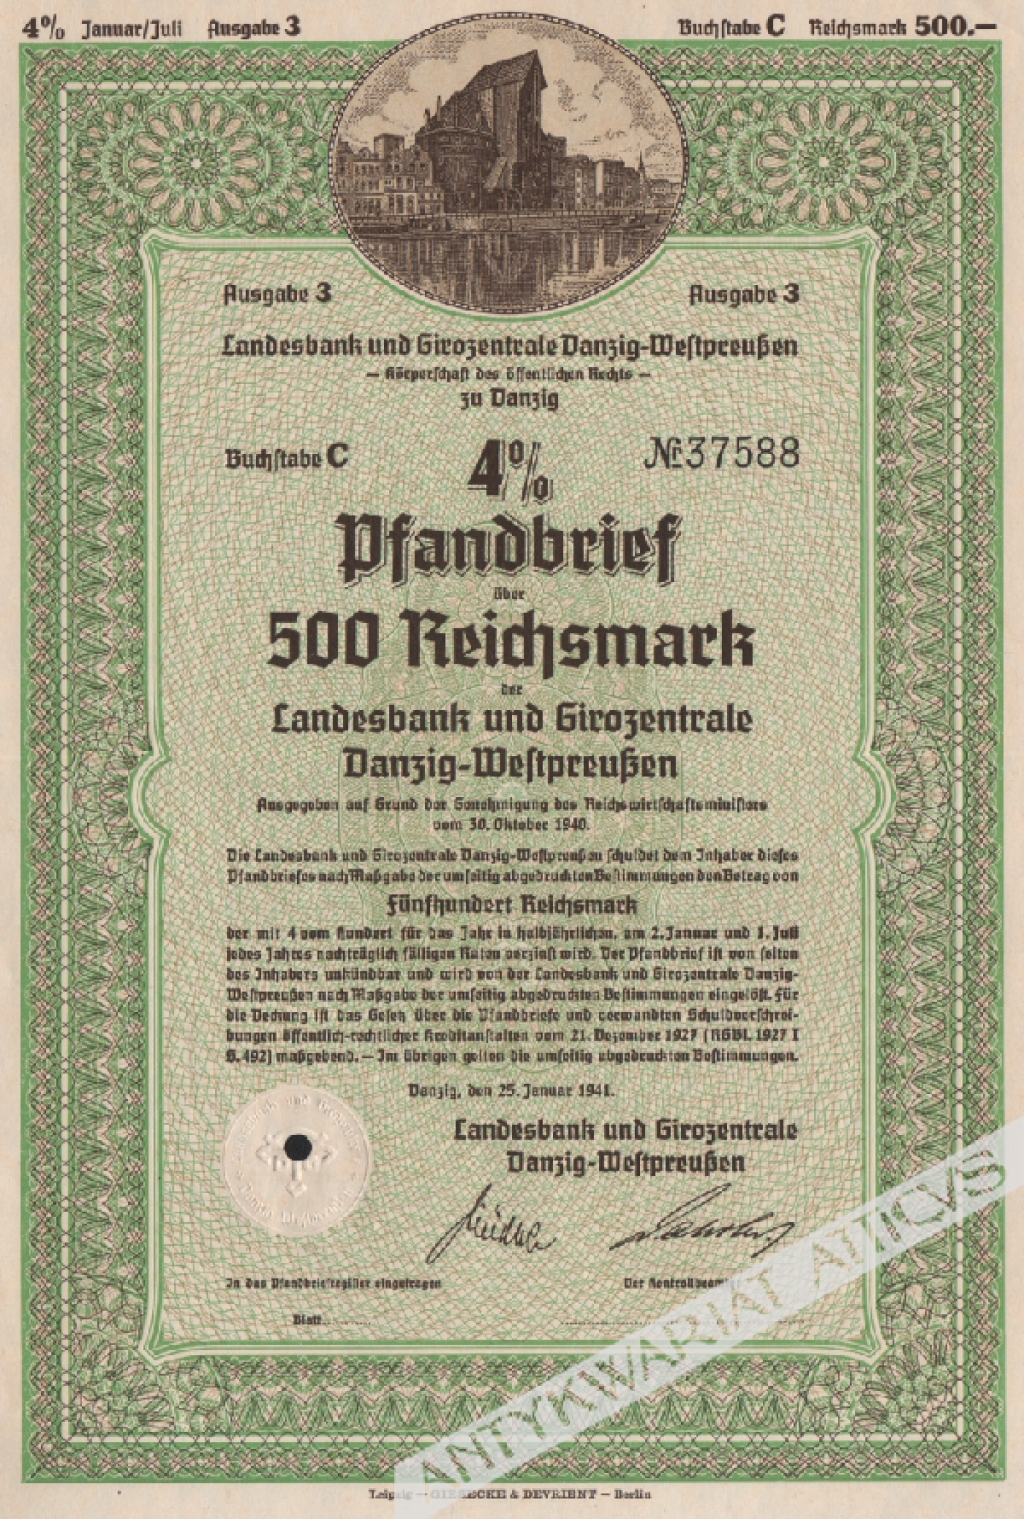 [list zastawny] 4 1/2% Pfandbrief uber 500 Reichsmark der Landesbank und Girozentrale Danzig-Westpreussen